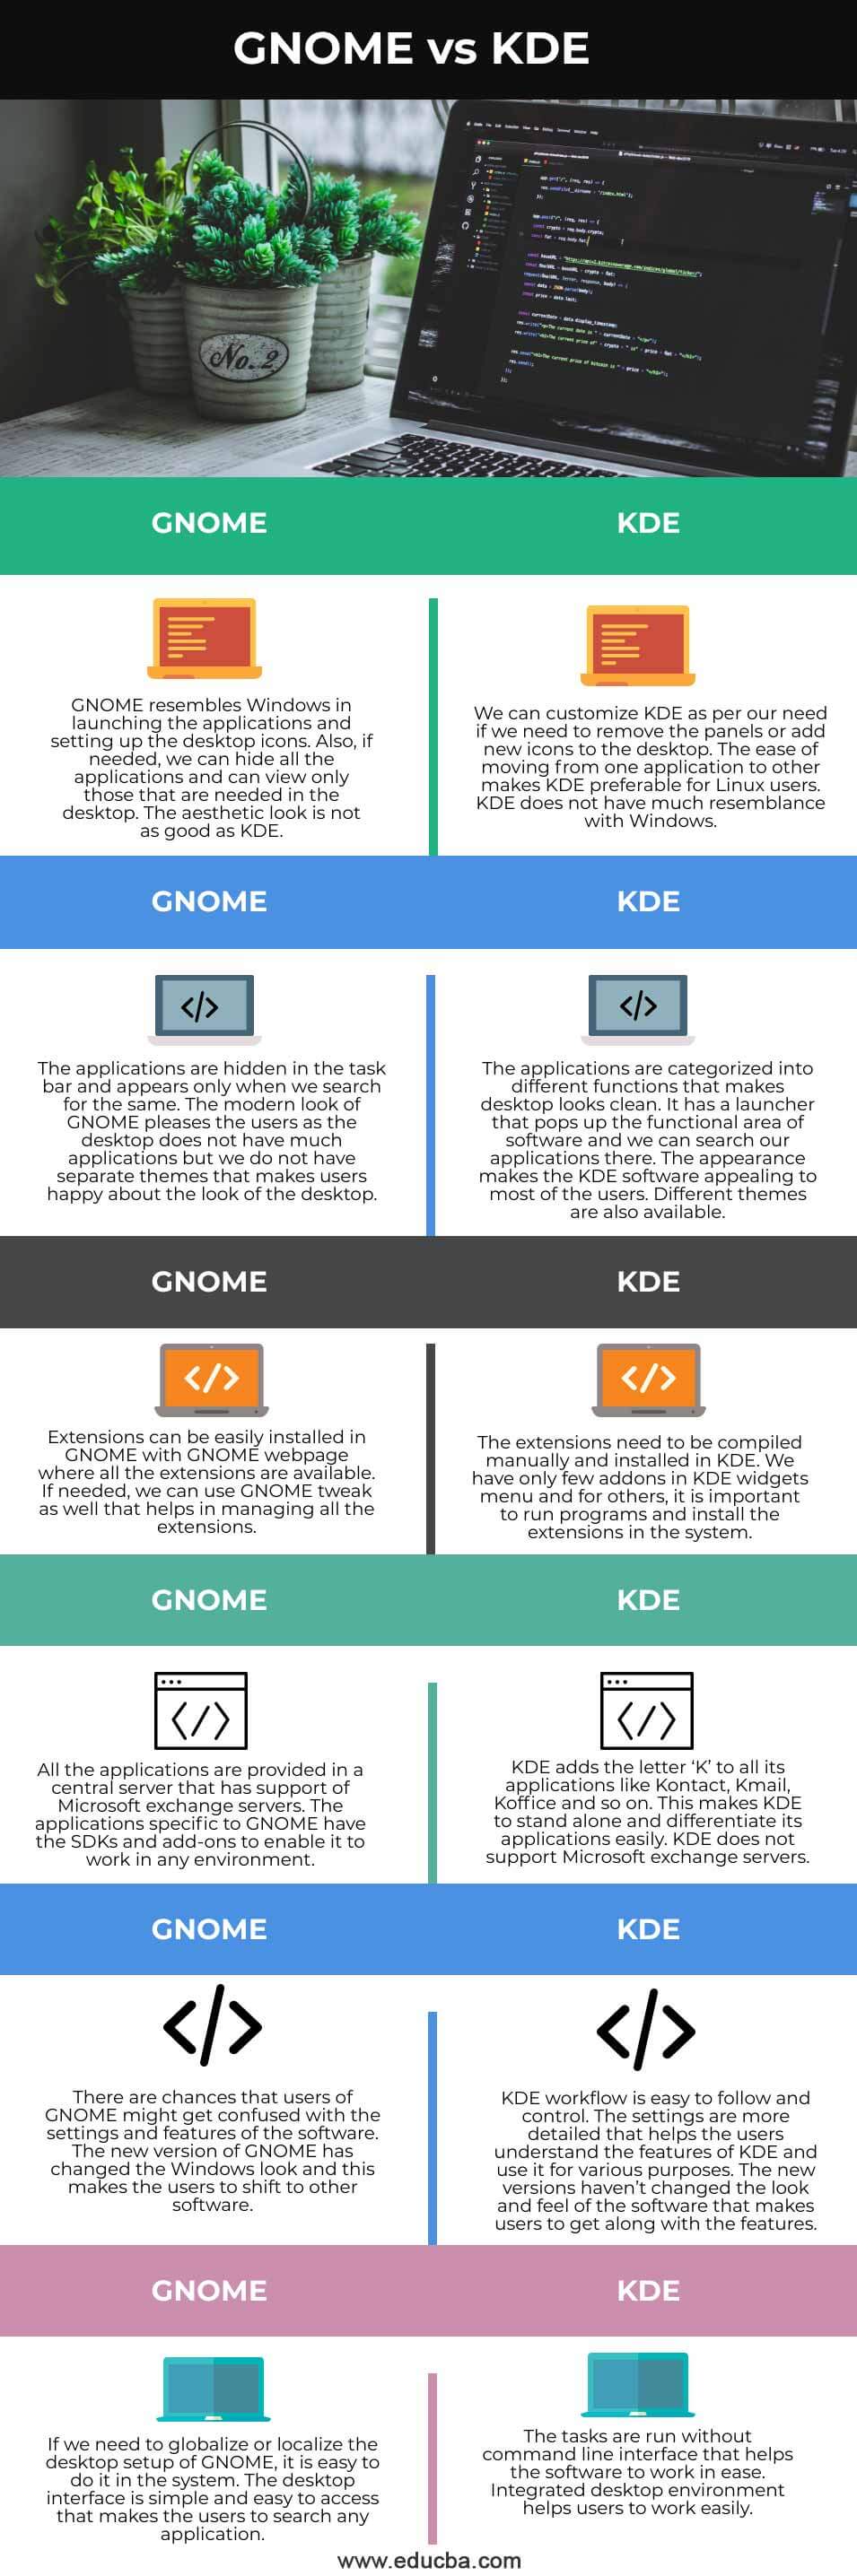 GNOME-vs-KDE-info